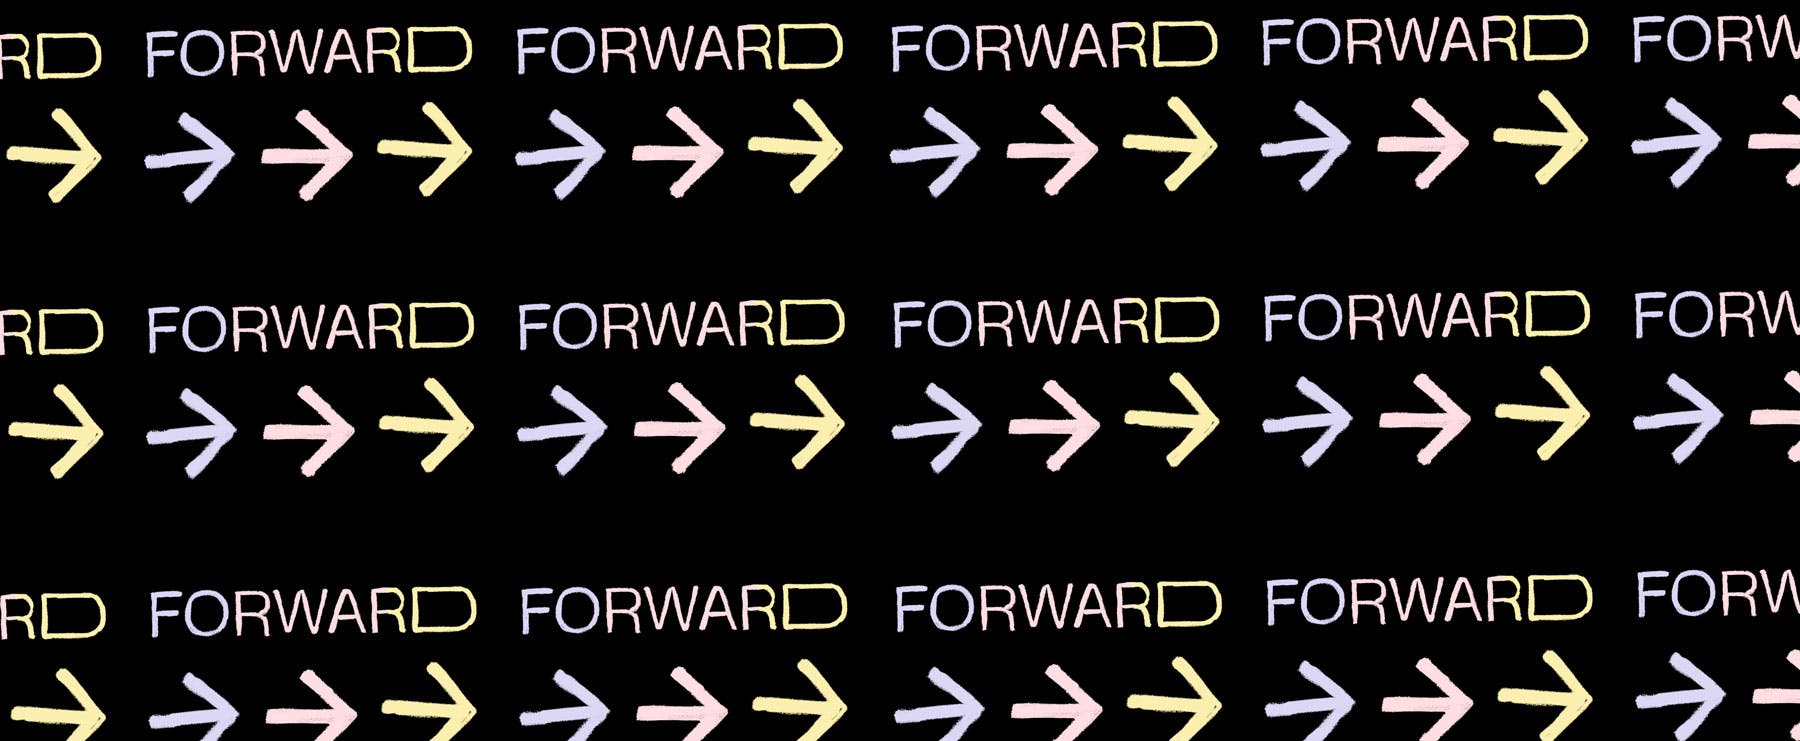 Forward, a digital summit powered by Pleo